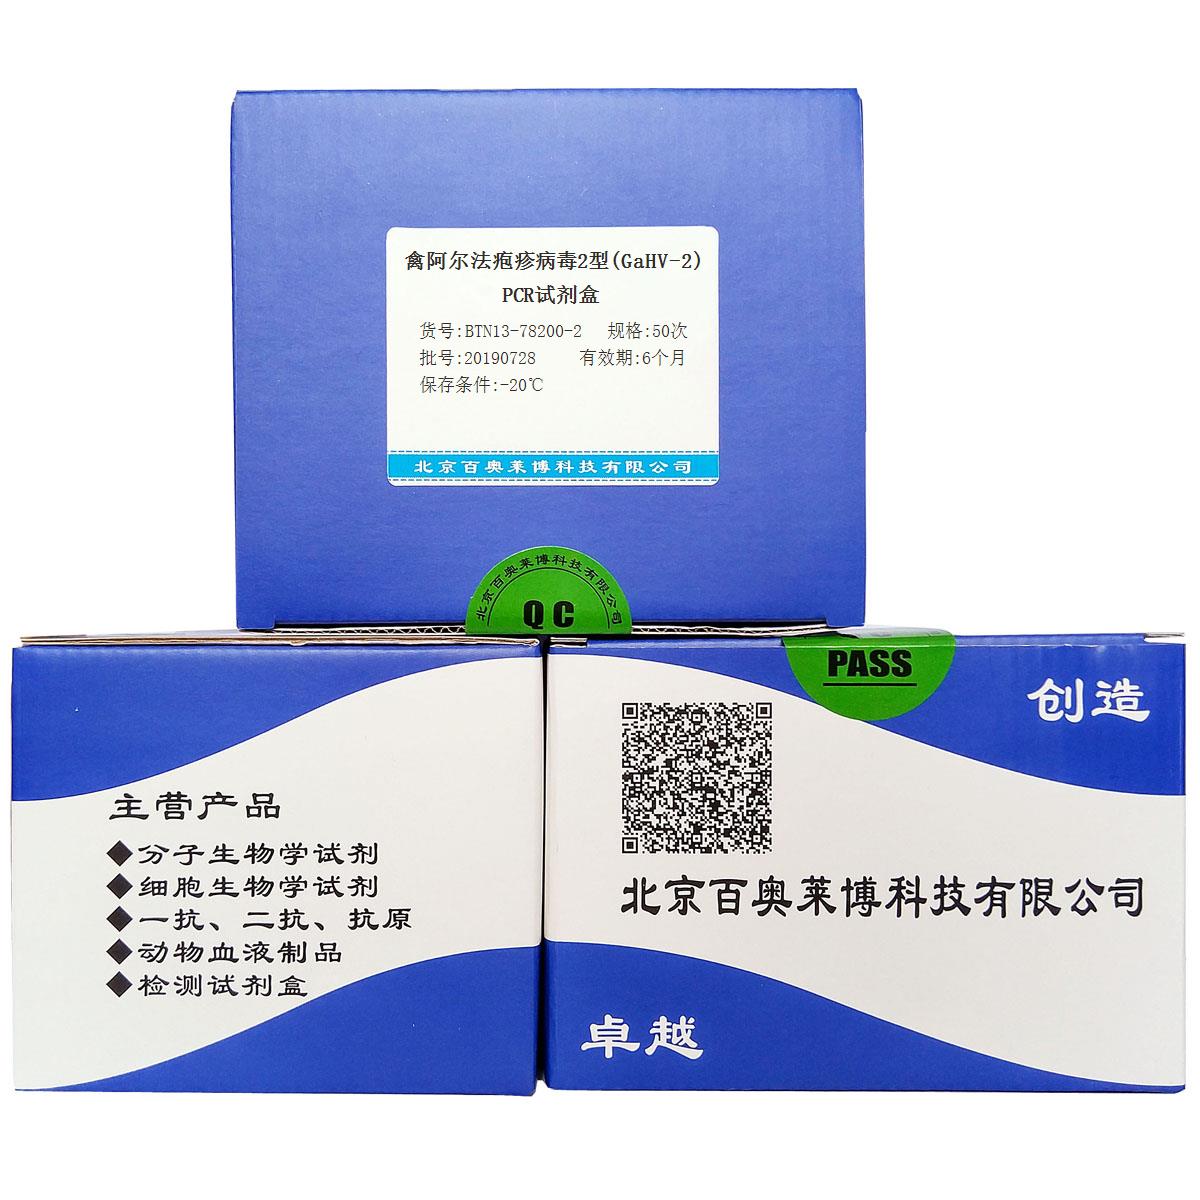 禽阿尔法疱疹病毒2型(GaHV-2)PCR试剂盒